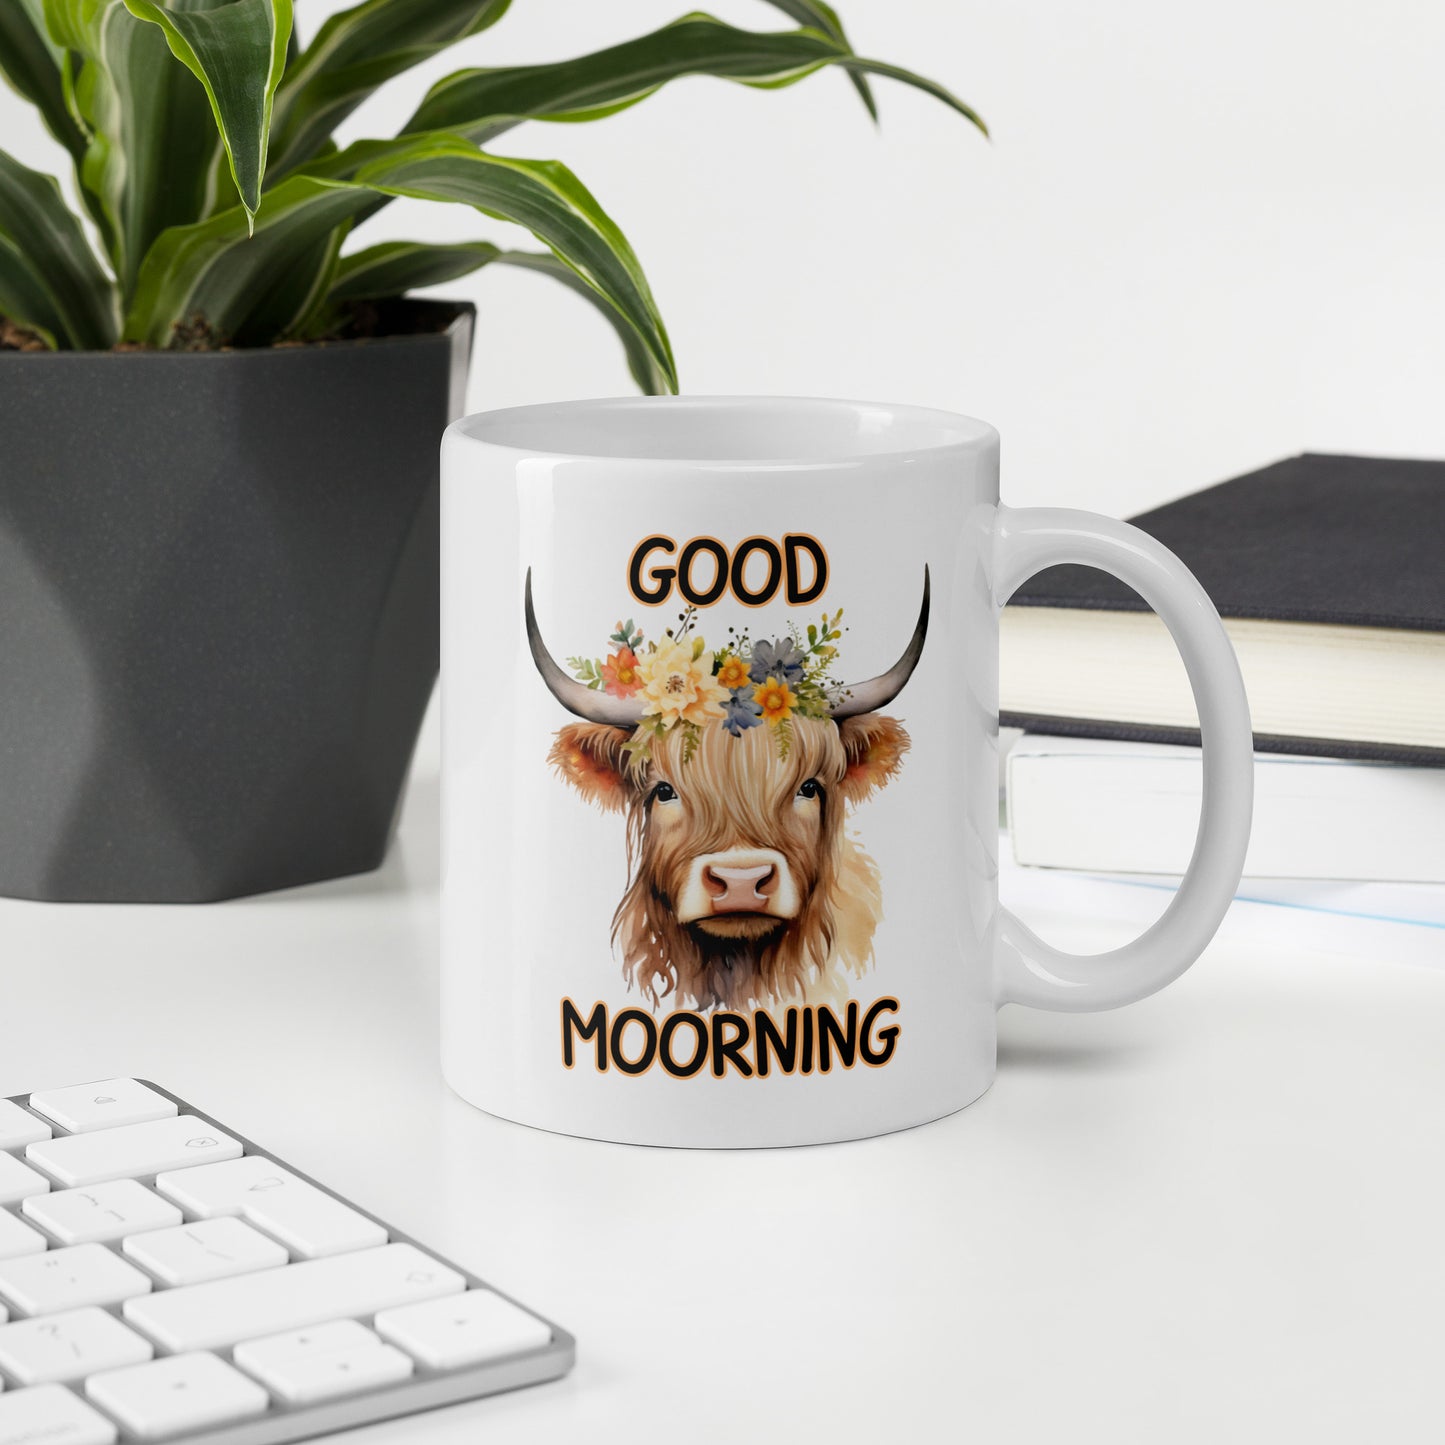 Good Morning Highland: White glossy mug